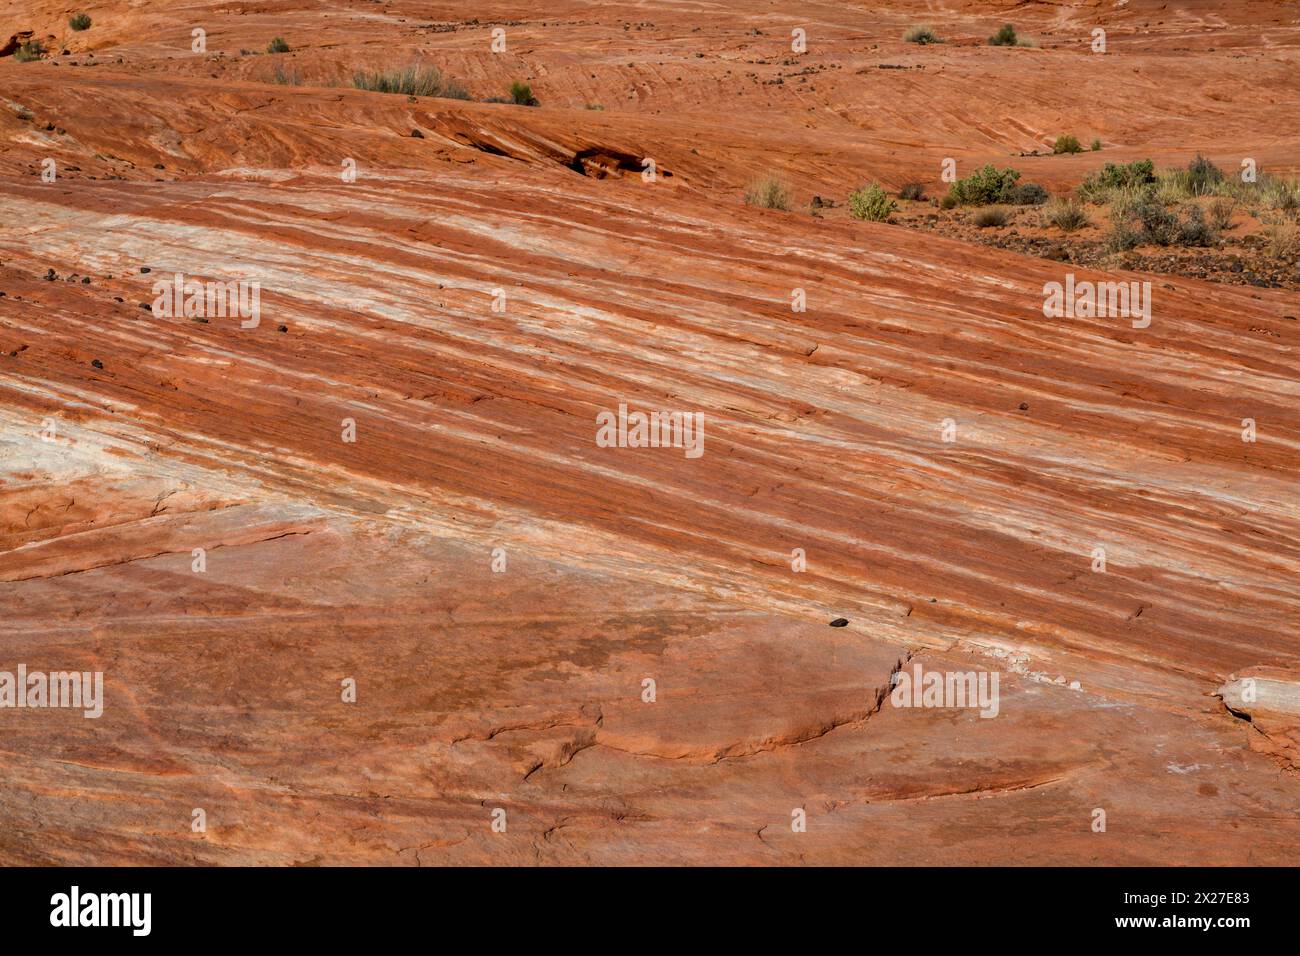 La Valle del Fuoco, Nevada. L'onda di fuoco--striature di pietra arenaria rossa. Foto Stock